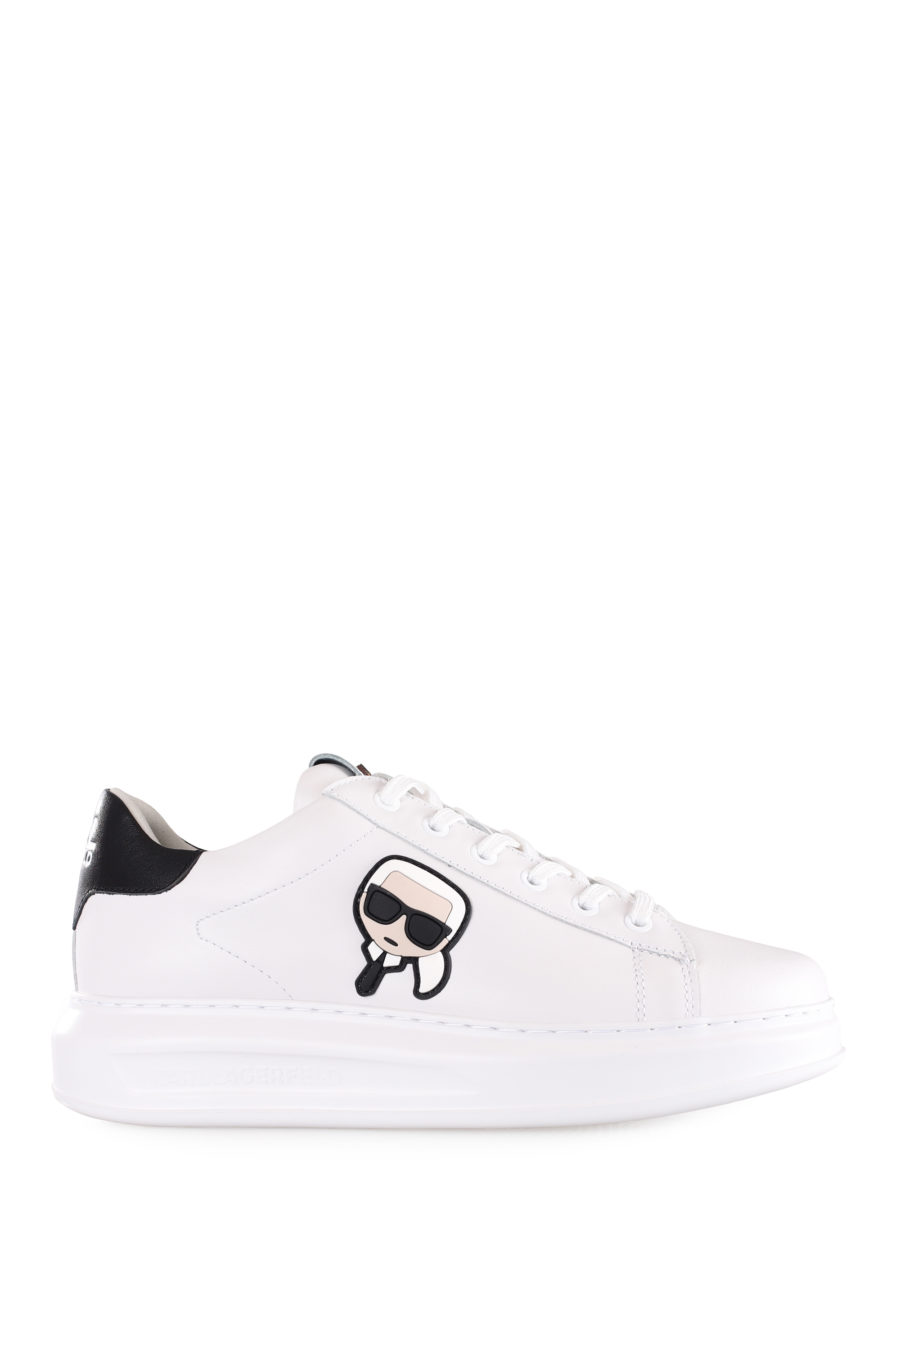 Zapatillas blancas con logo "Karl" en goma - IMG 9580